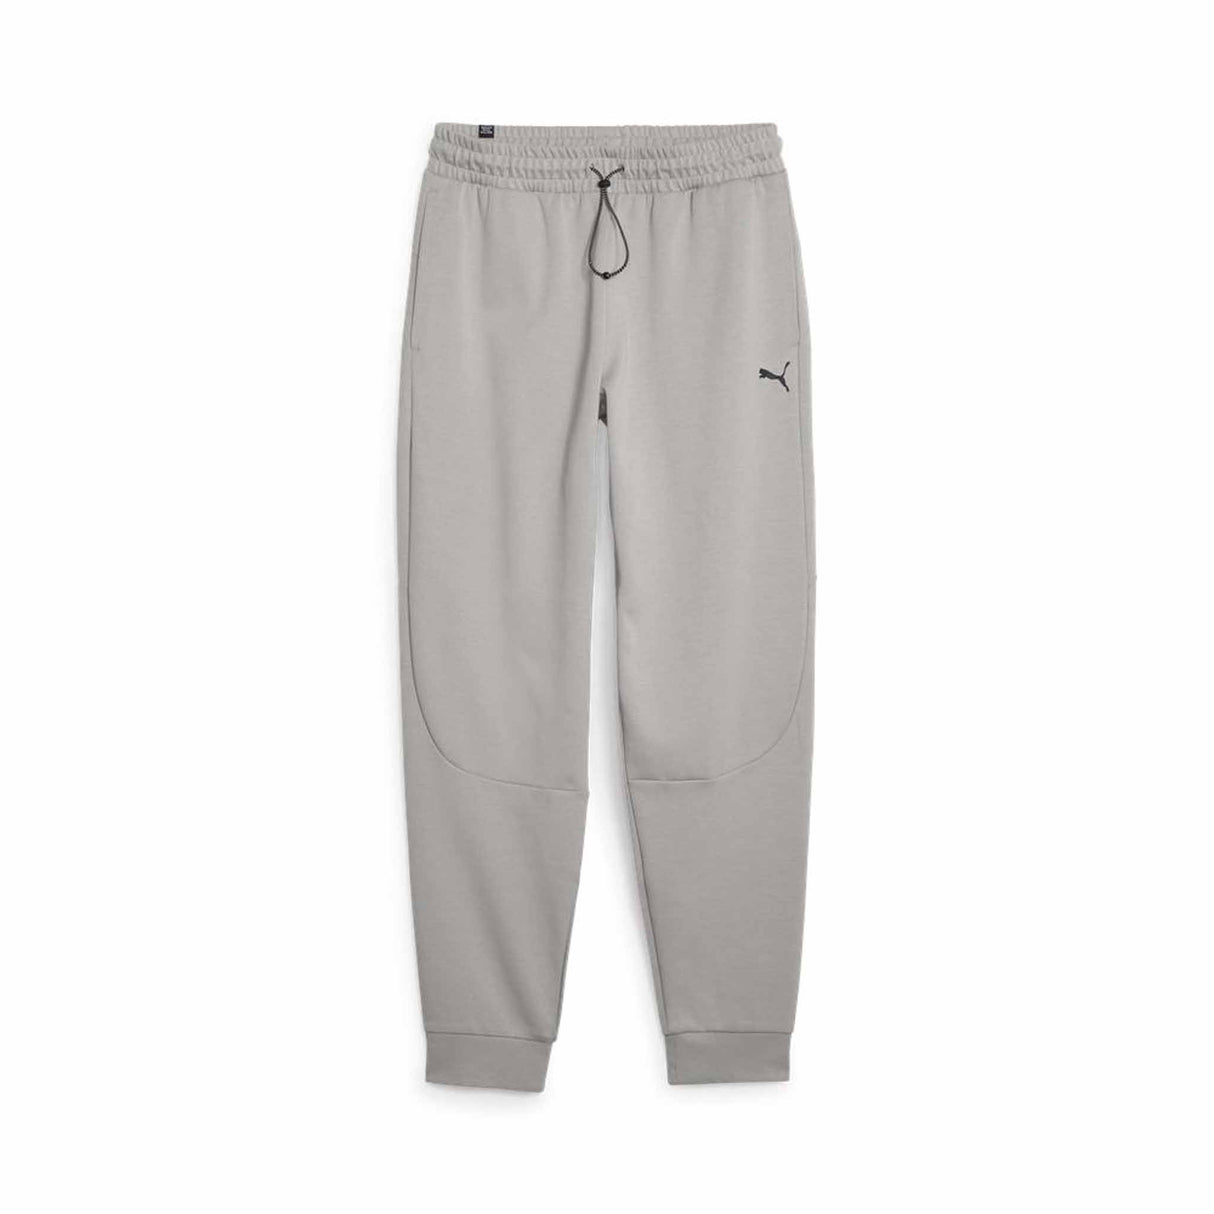 Pantalon de survêtement Puma RAD/CAL Pants DK pour homme - Concrete Gray